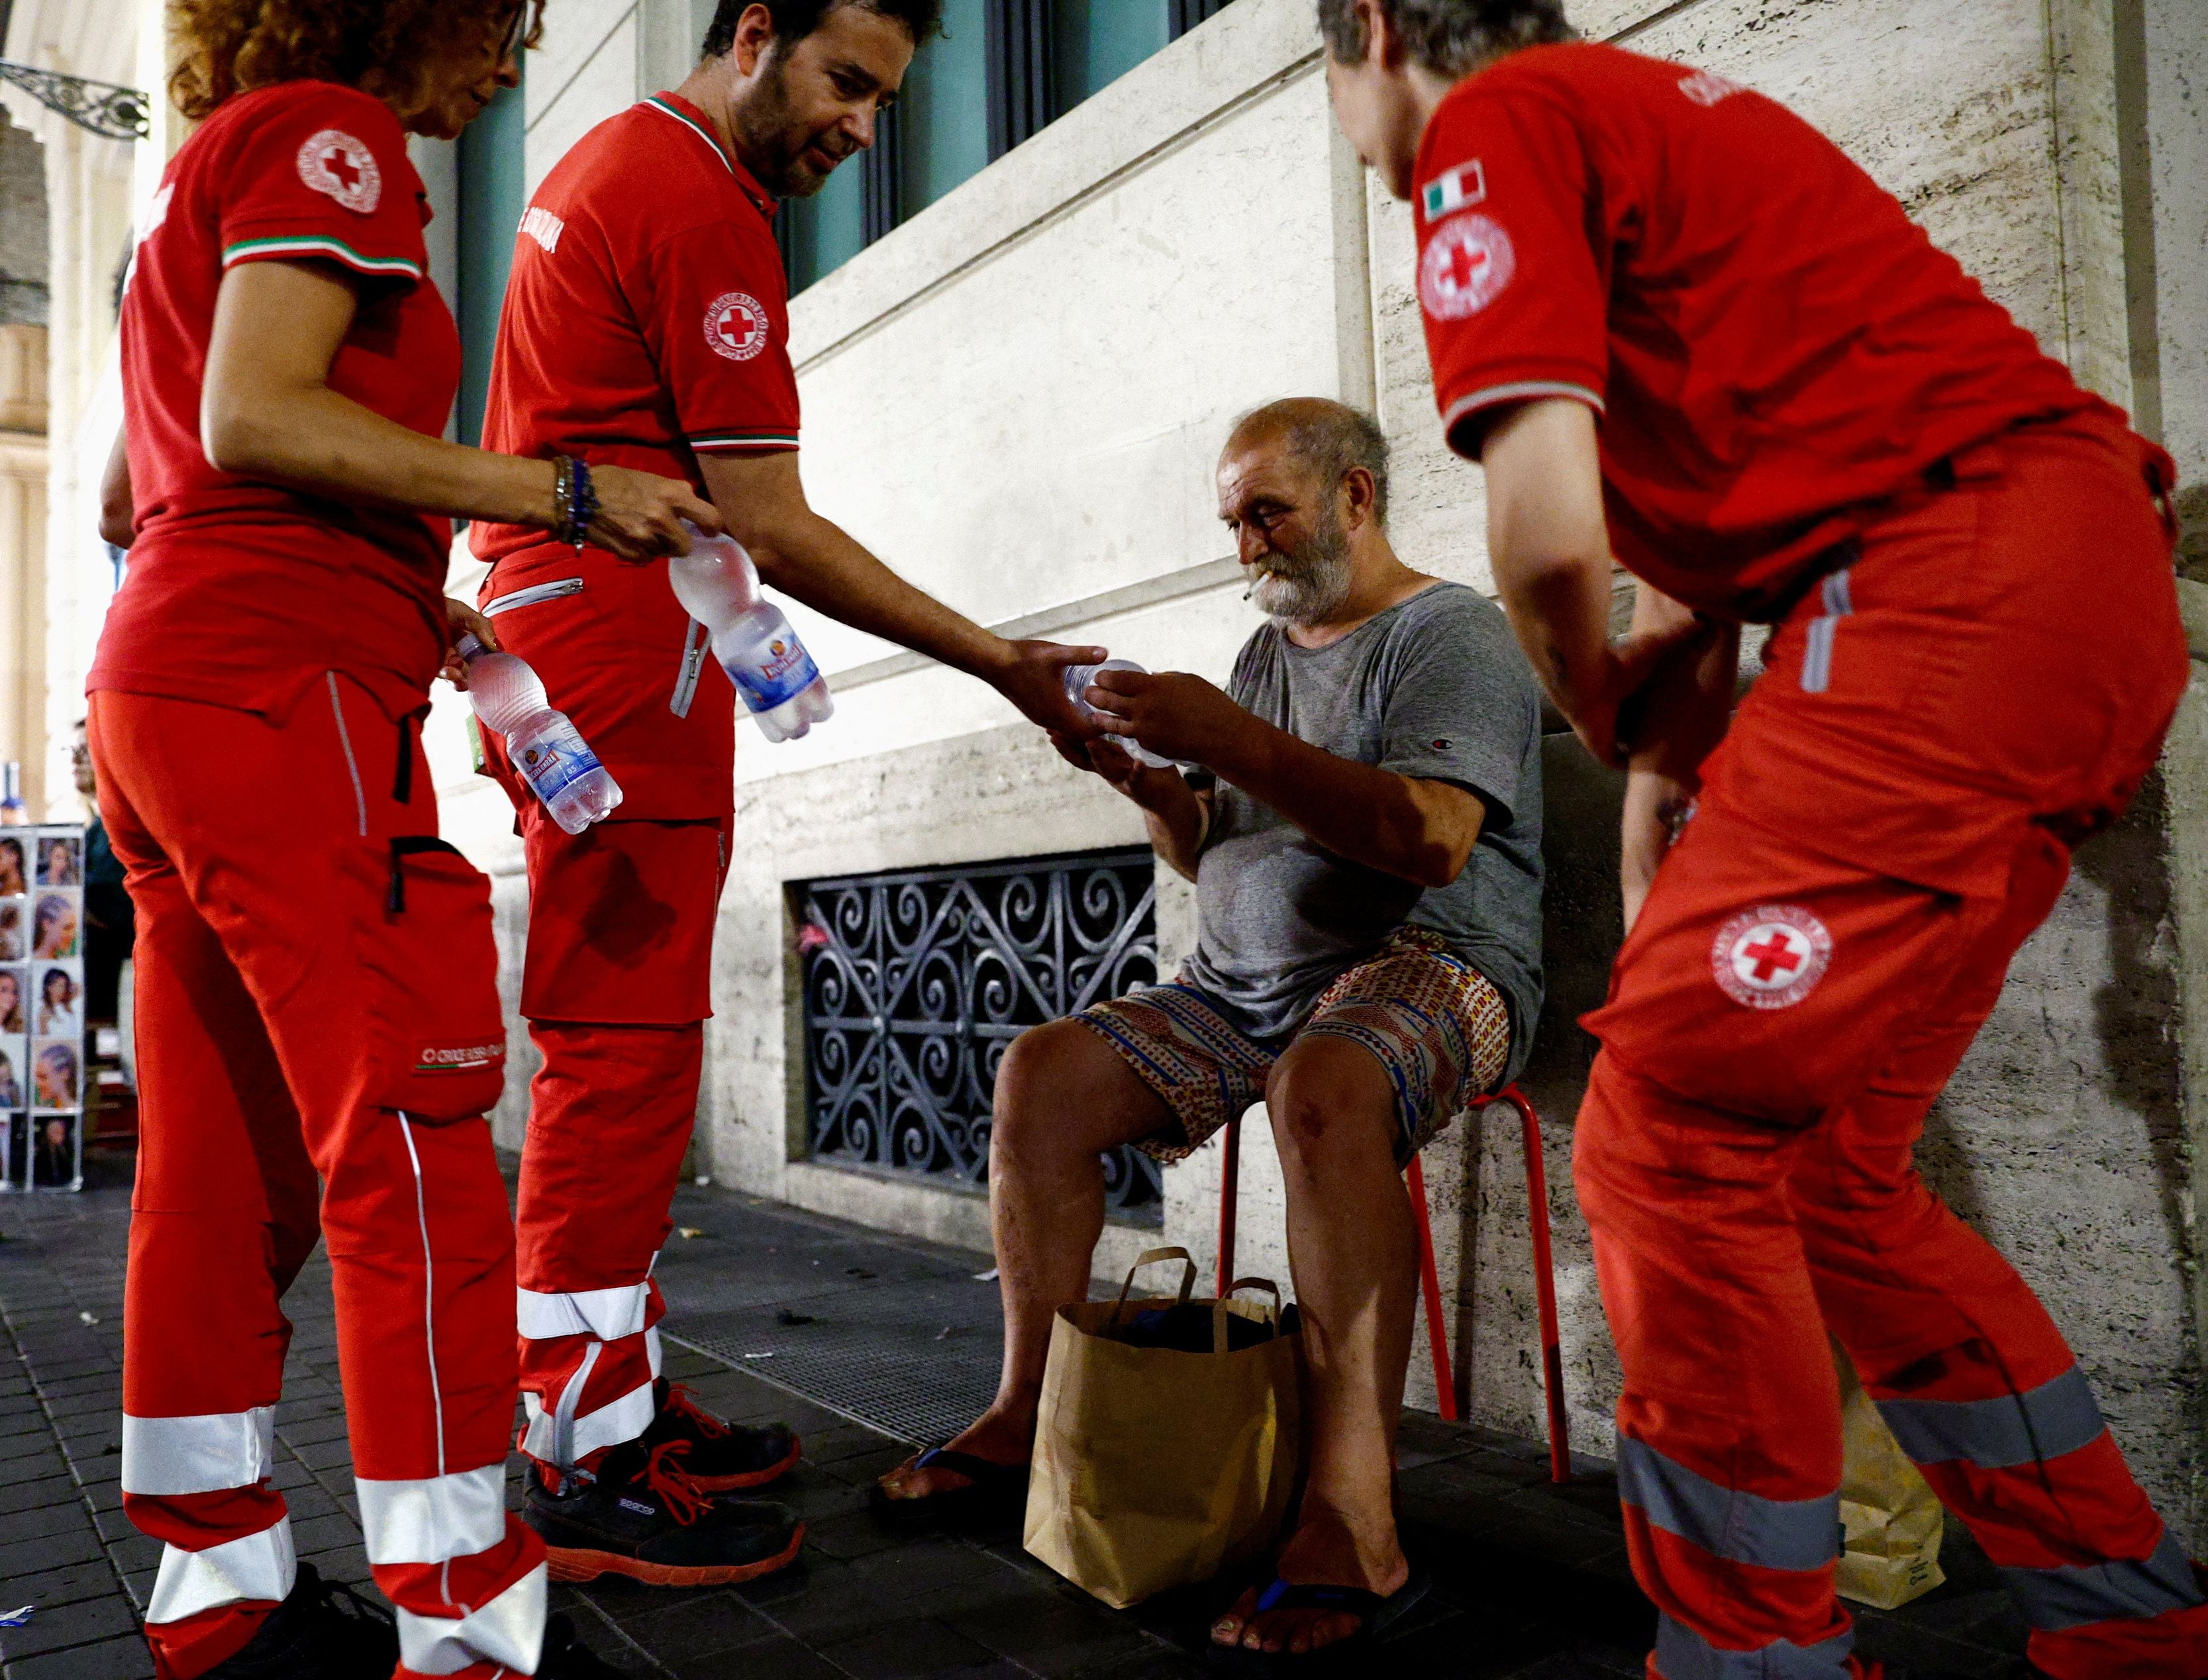 Las olas de calor en julio pusieron en mayor riesgo la vida de las personas más vulnerables: la Cruz Roja tuvo que dar apoyo a personas en situación de calle en Italia/ REUTERS/Guglielmo Mangiapane